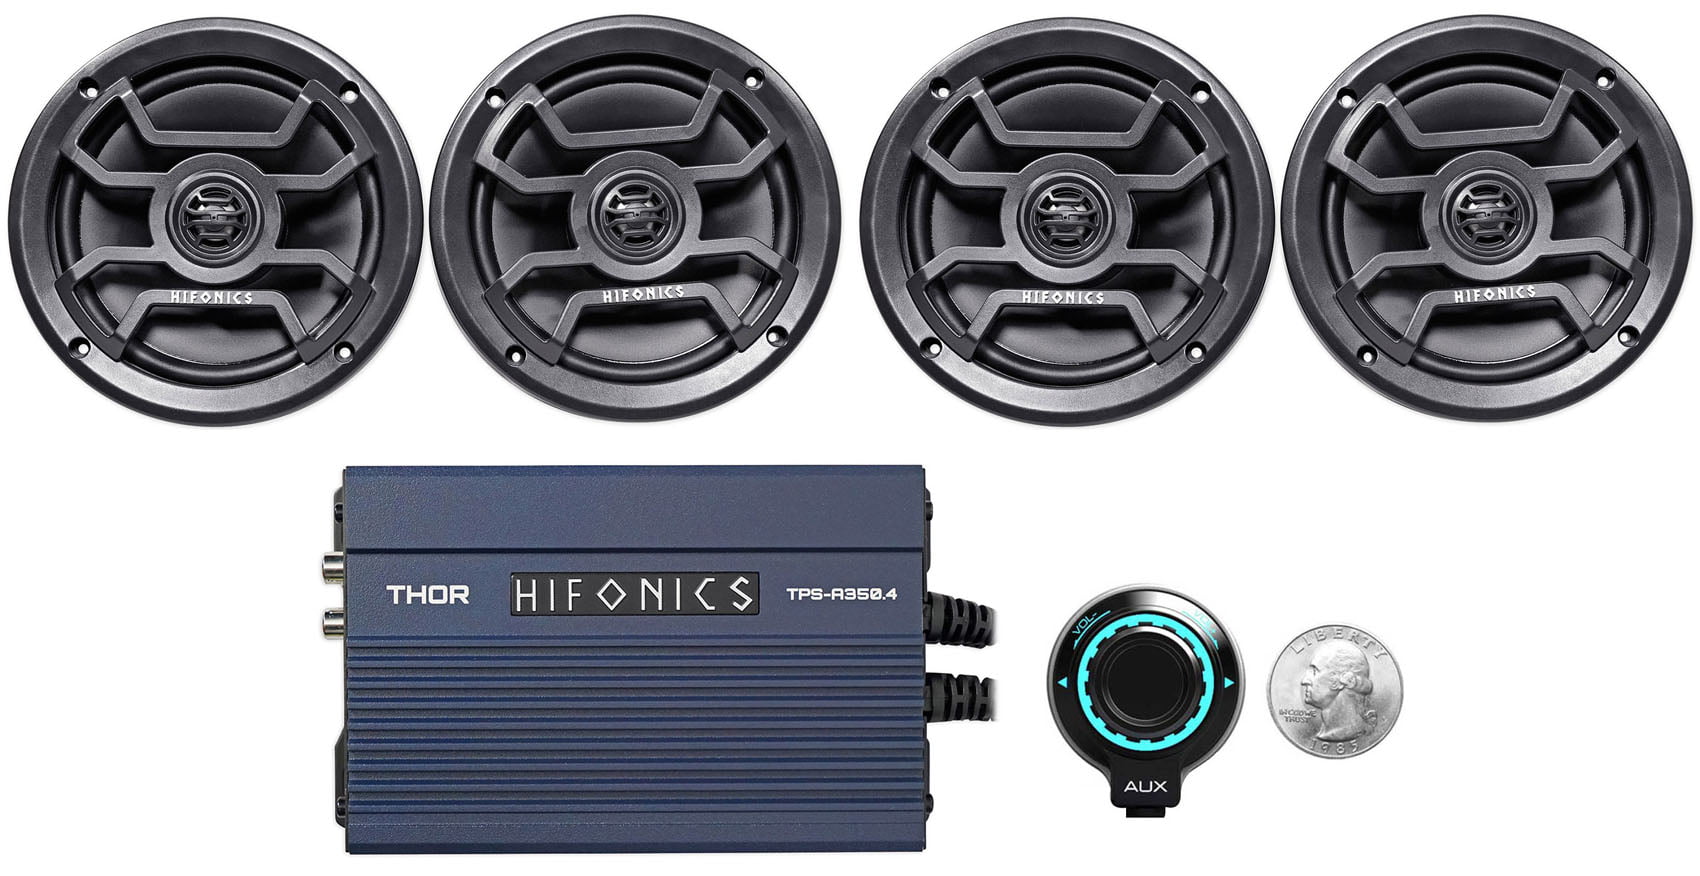 Hifonics TPS-CM65B 6.5" 480 Watt Marine Speakers For Boat/ATV/UTV/RZR/Cart 4 